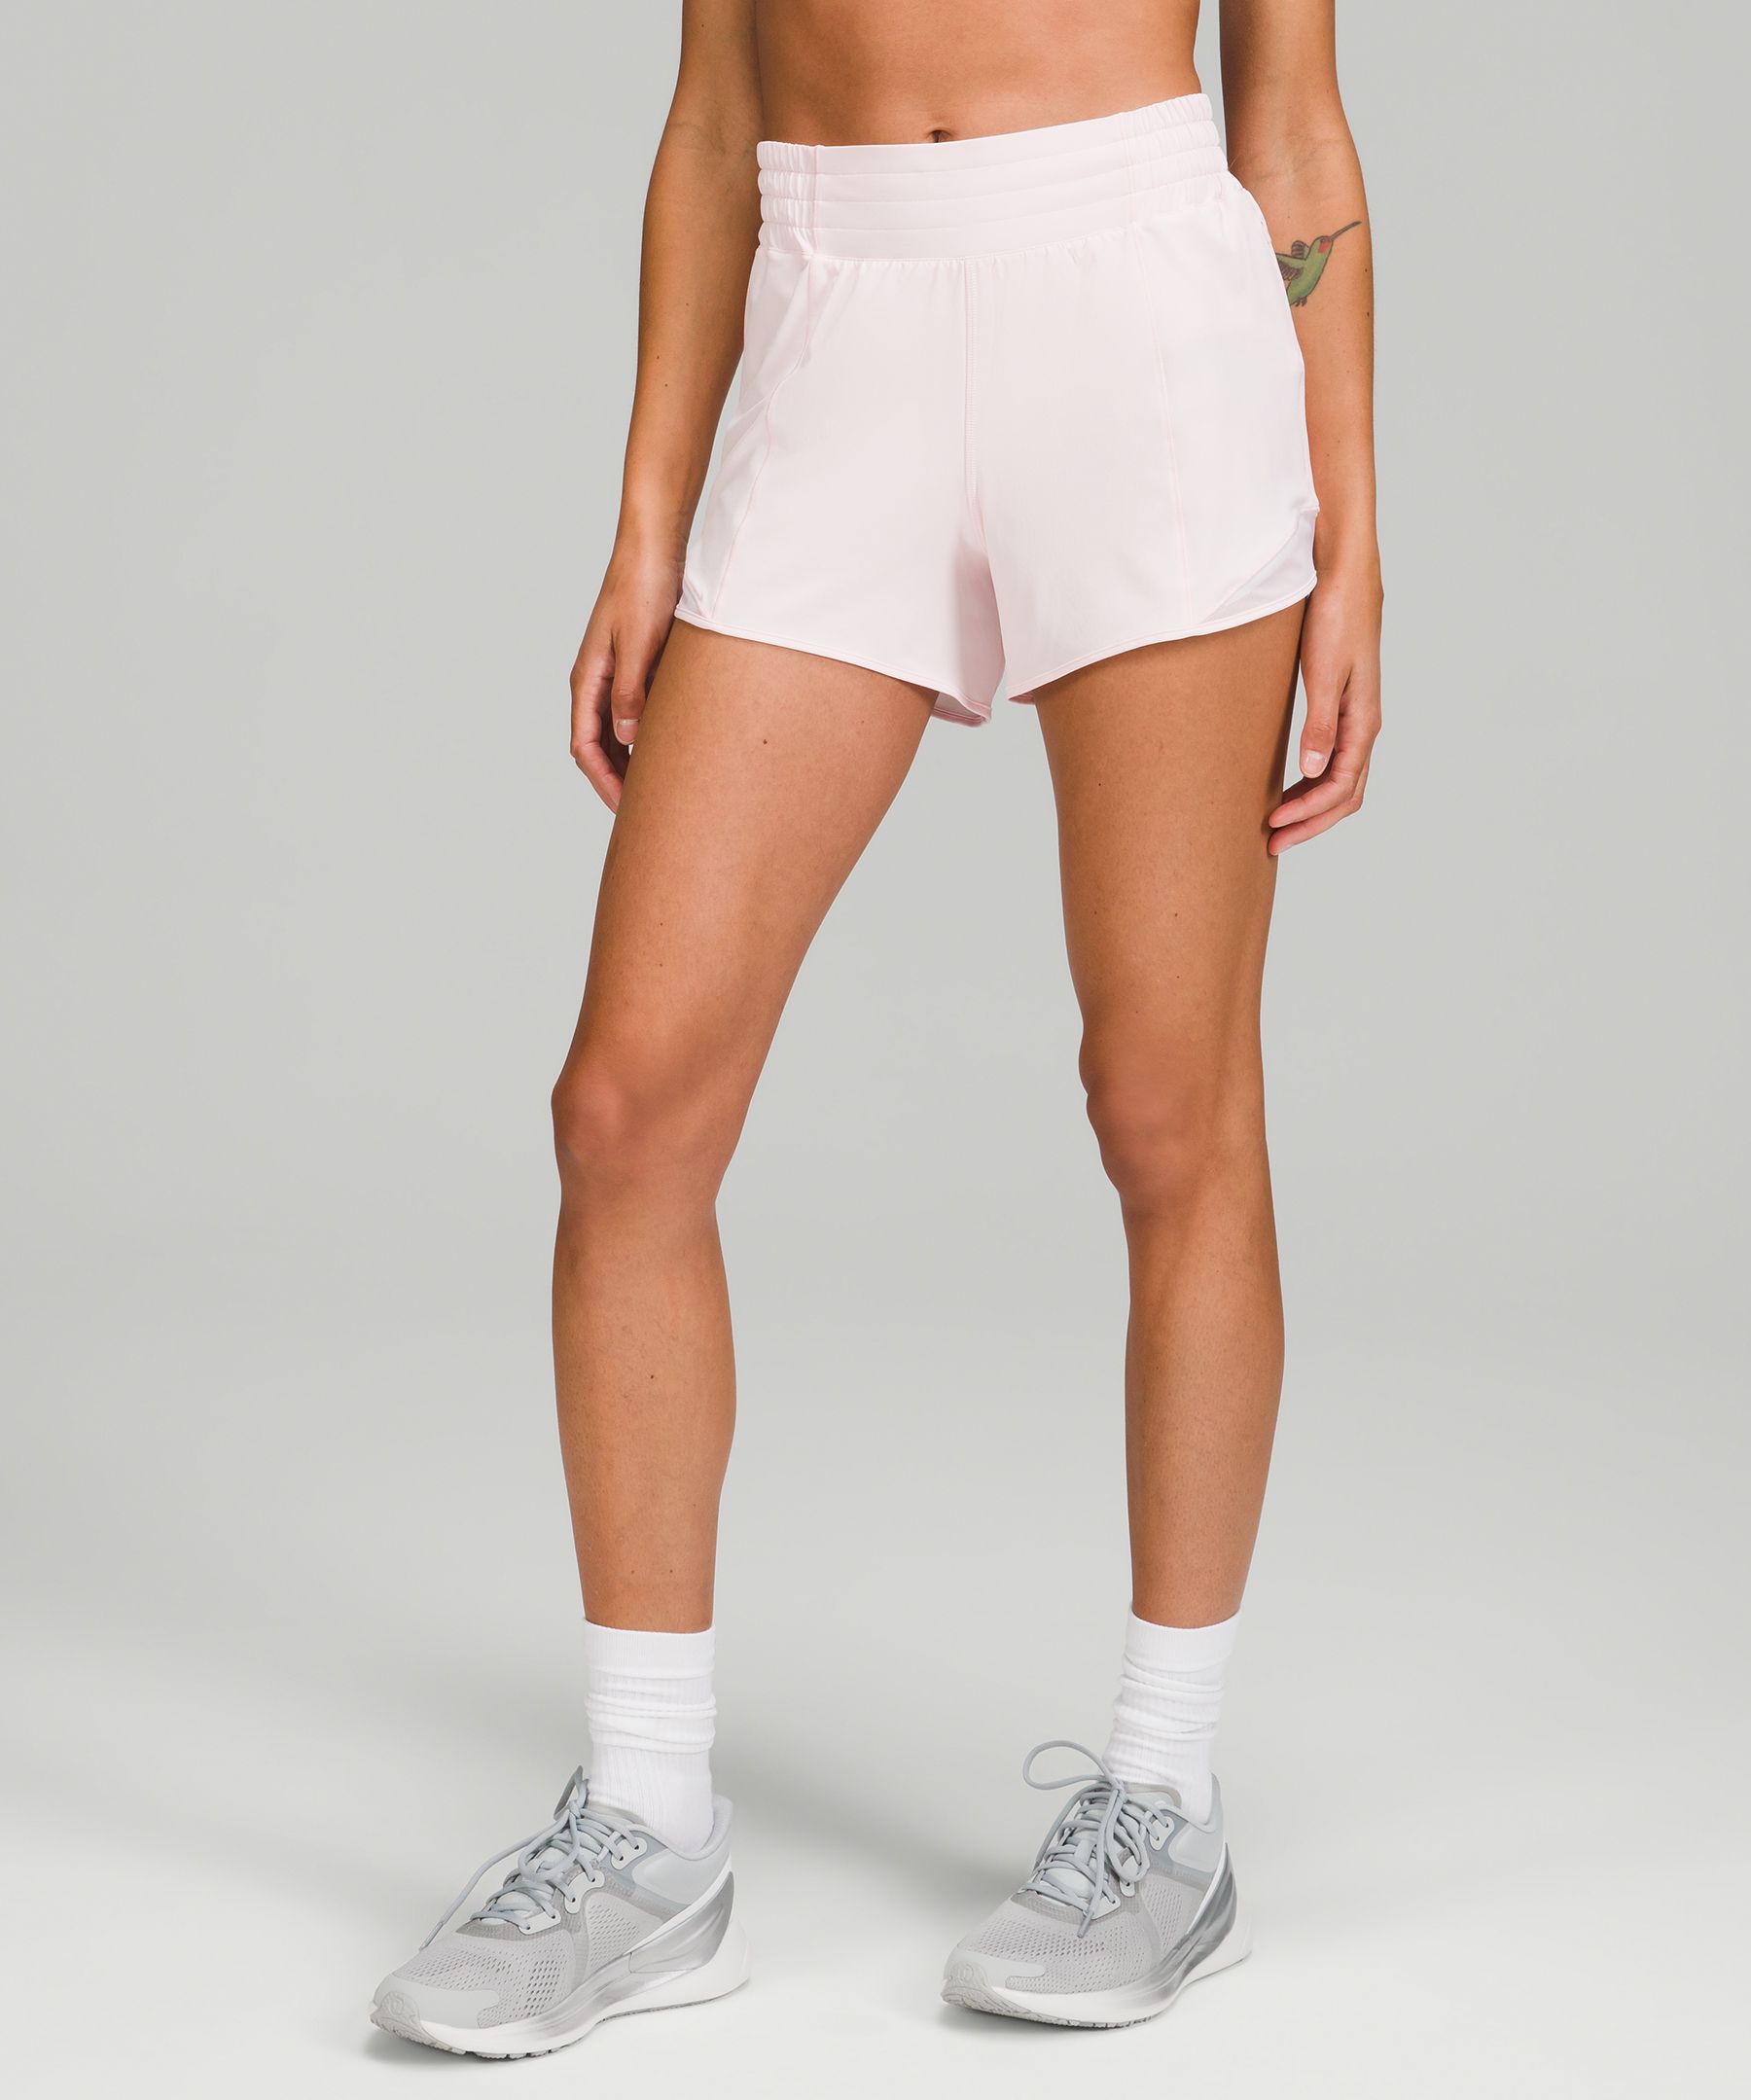 lululemon - Lulu Hotty Hot Shorts 4” on Designer Wardrobe